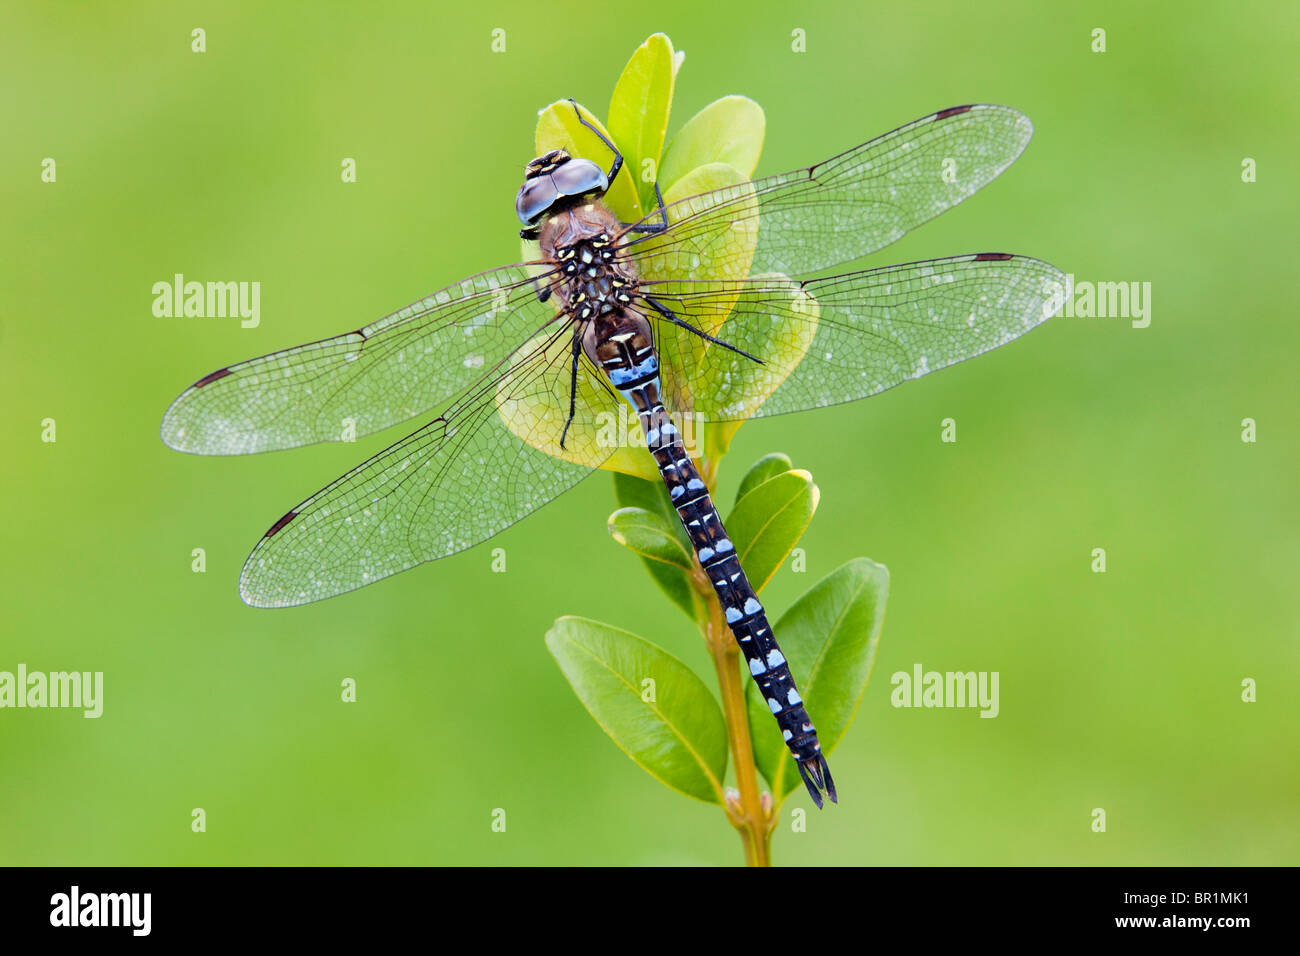 Un Hawker Migrants Dragonfly (Aeshna mixta) au repos sur une plante au cours de la journée Banque D'Images